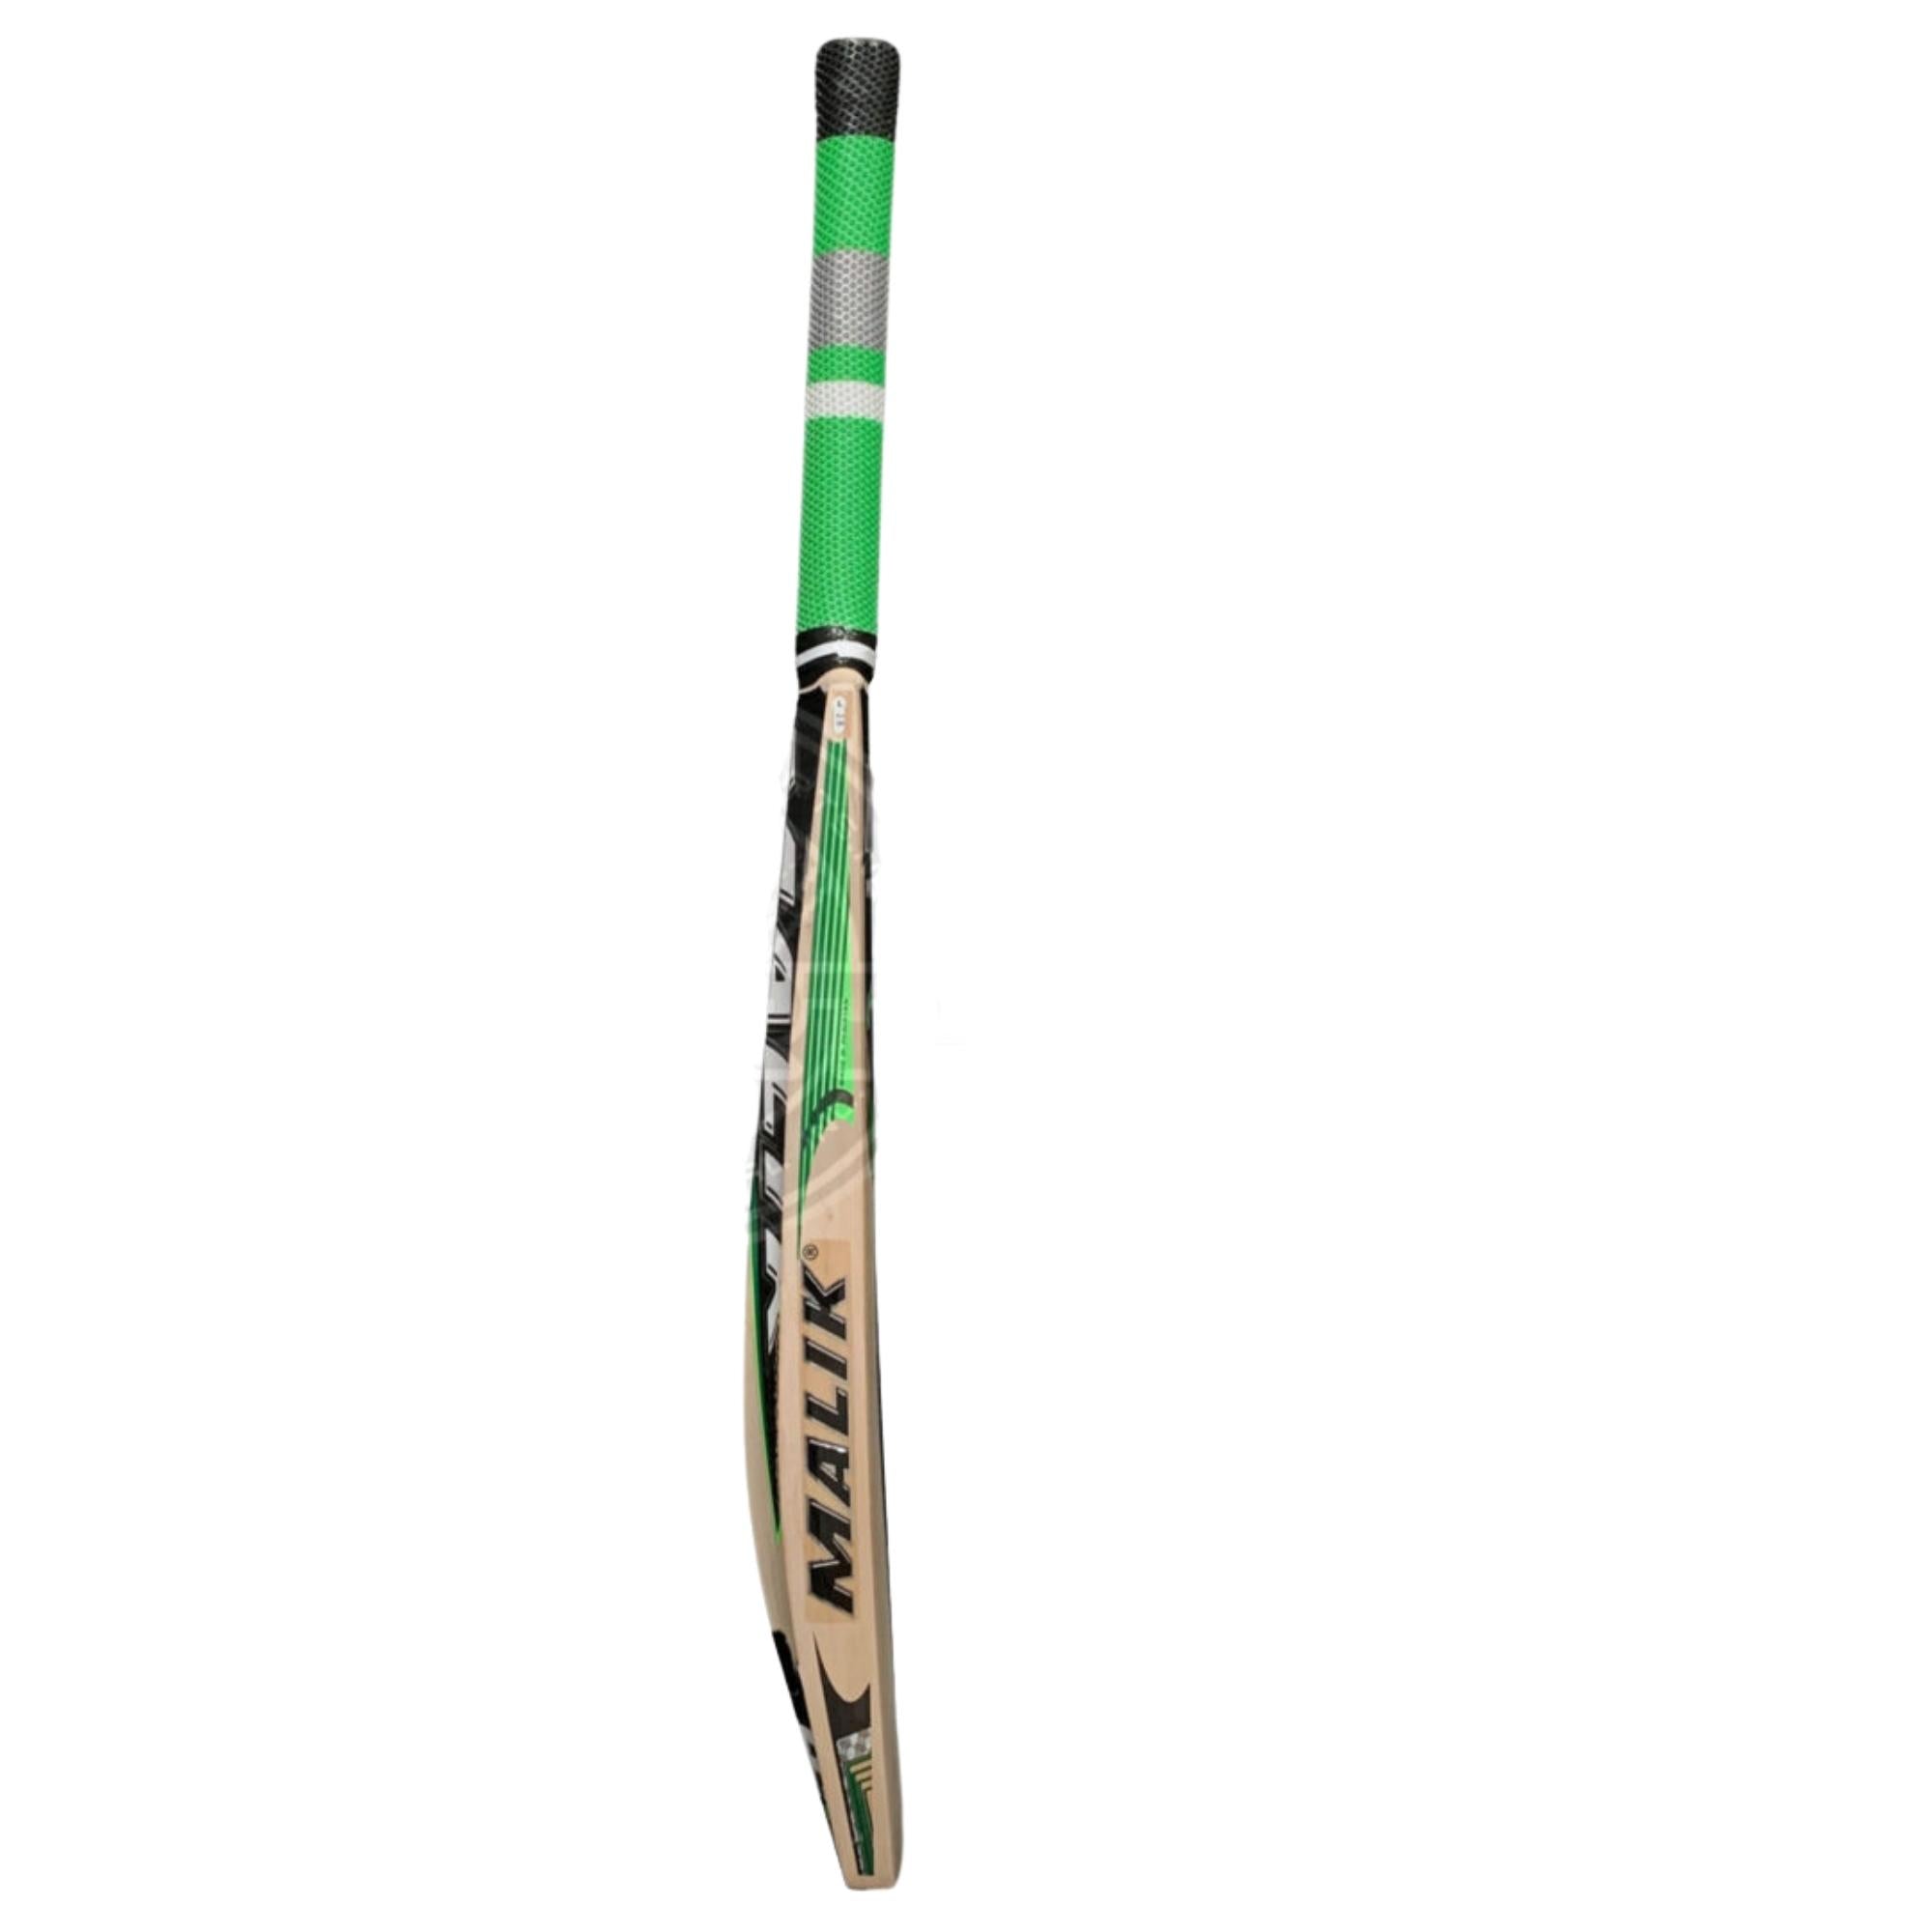 MB Malik & Lala Edition SA Green Handcrafted Cricket Bat